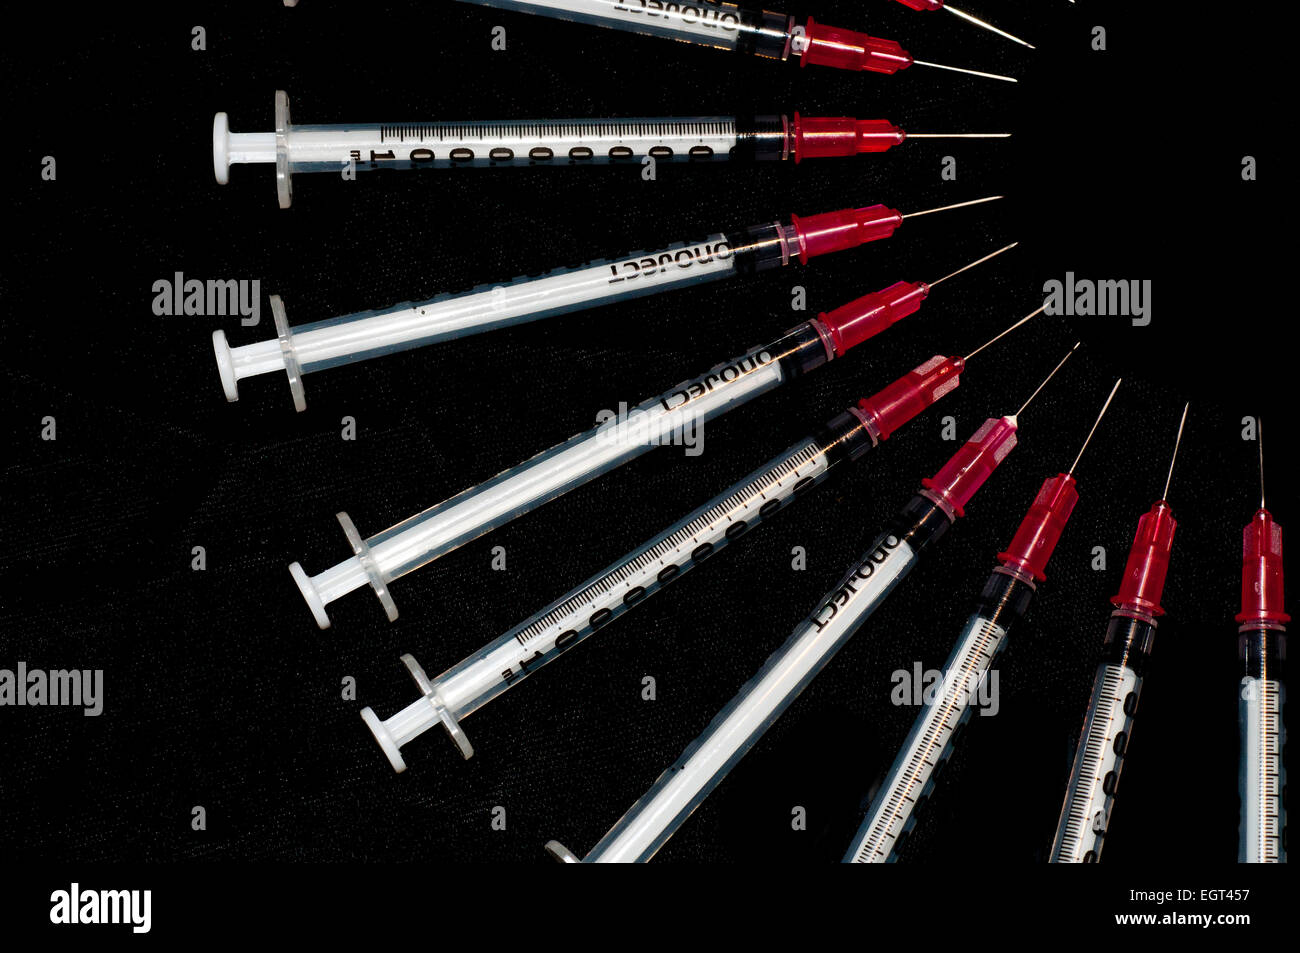 Spritzen in einem Bogen angeordnet verwendet; Konzept für Drogenmissbrauch erschossen Stockfoto